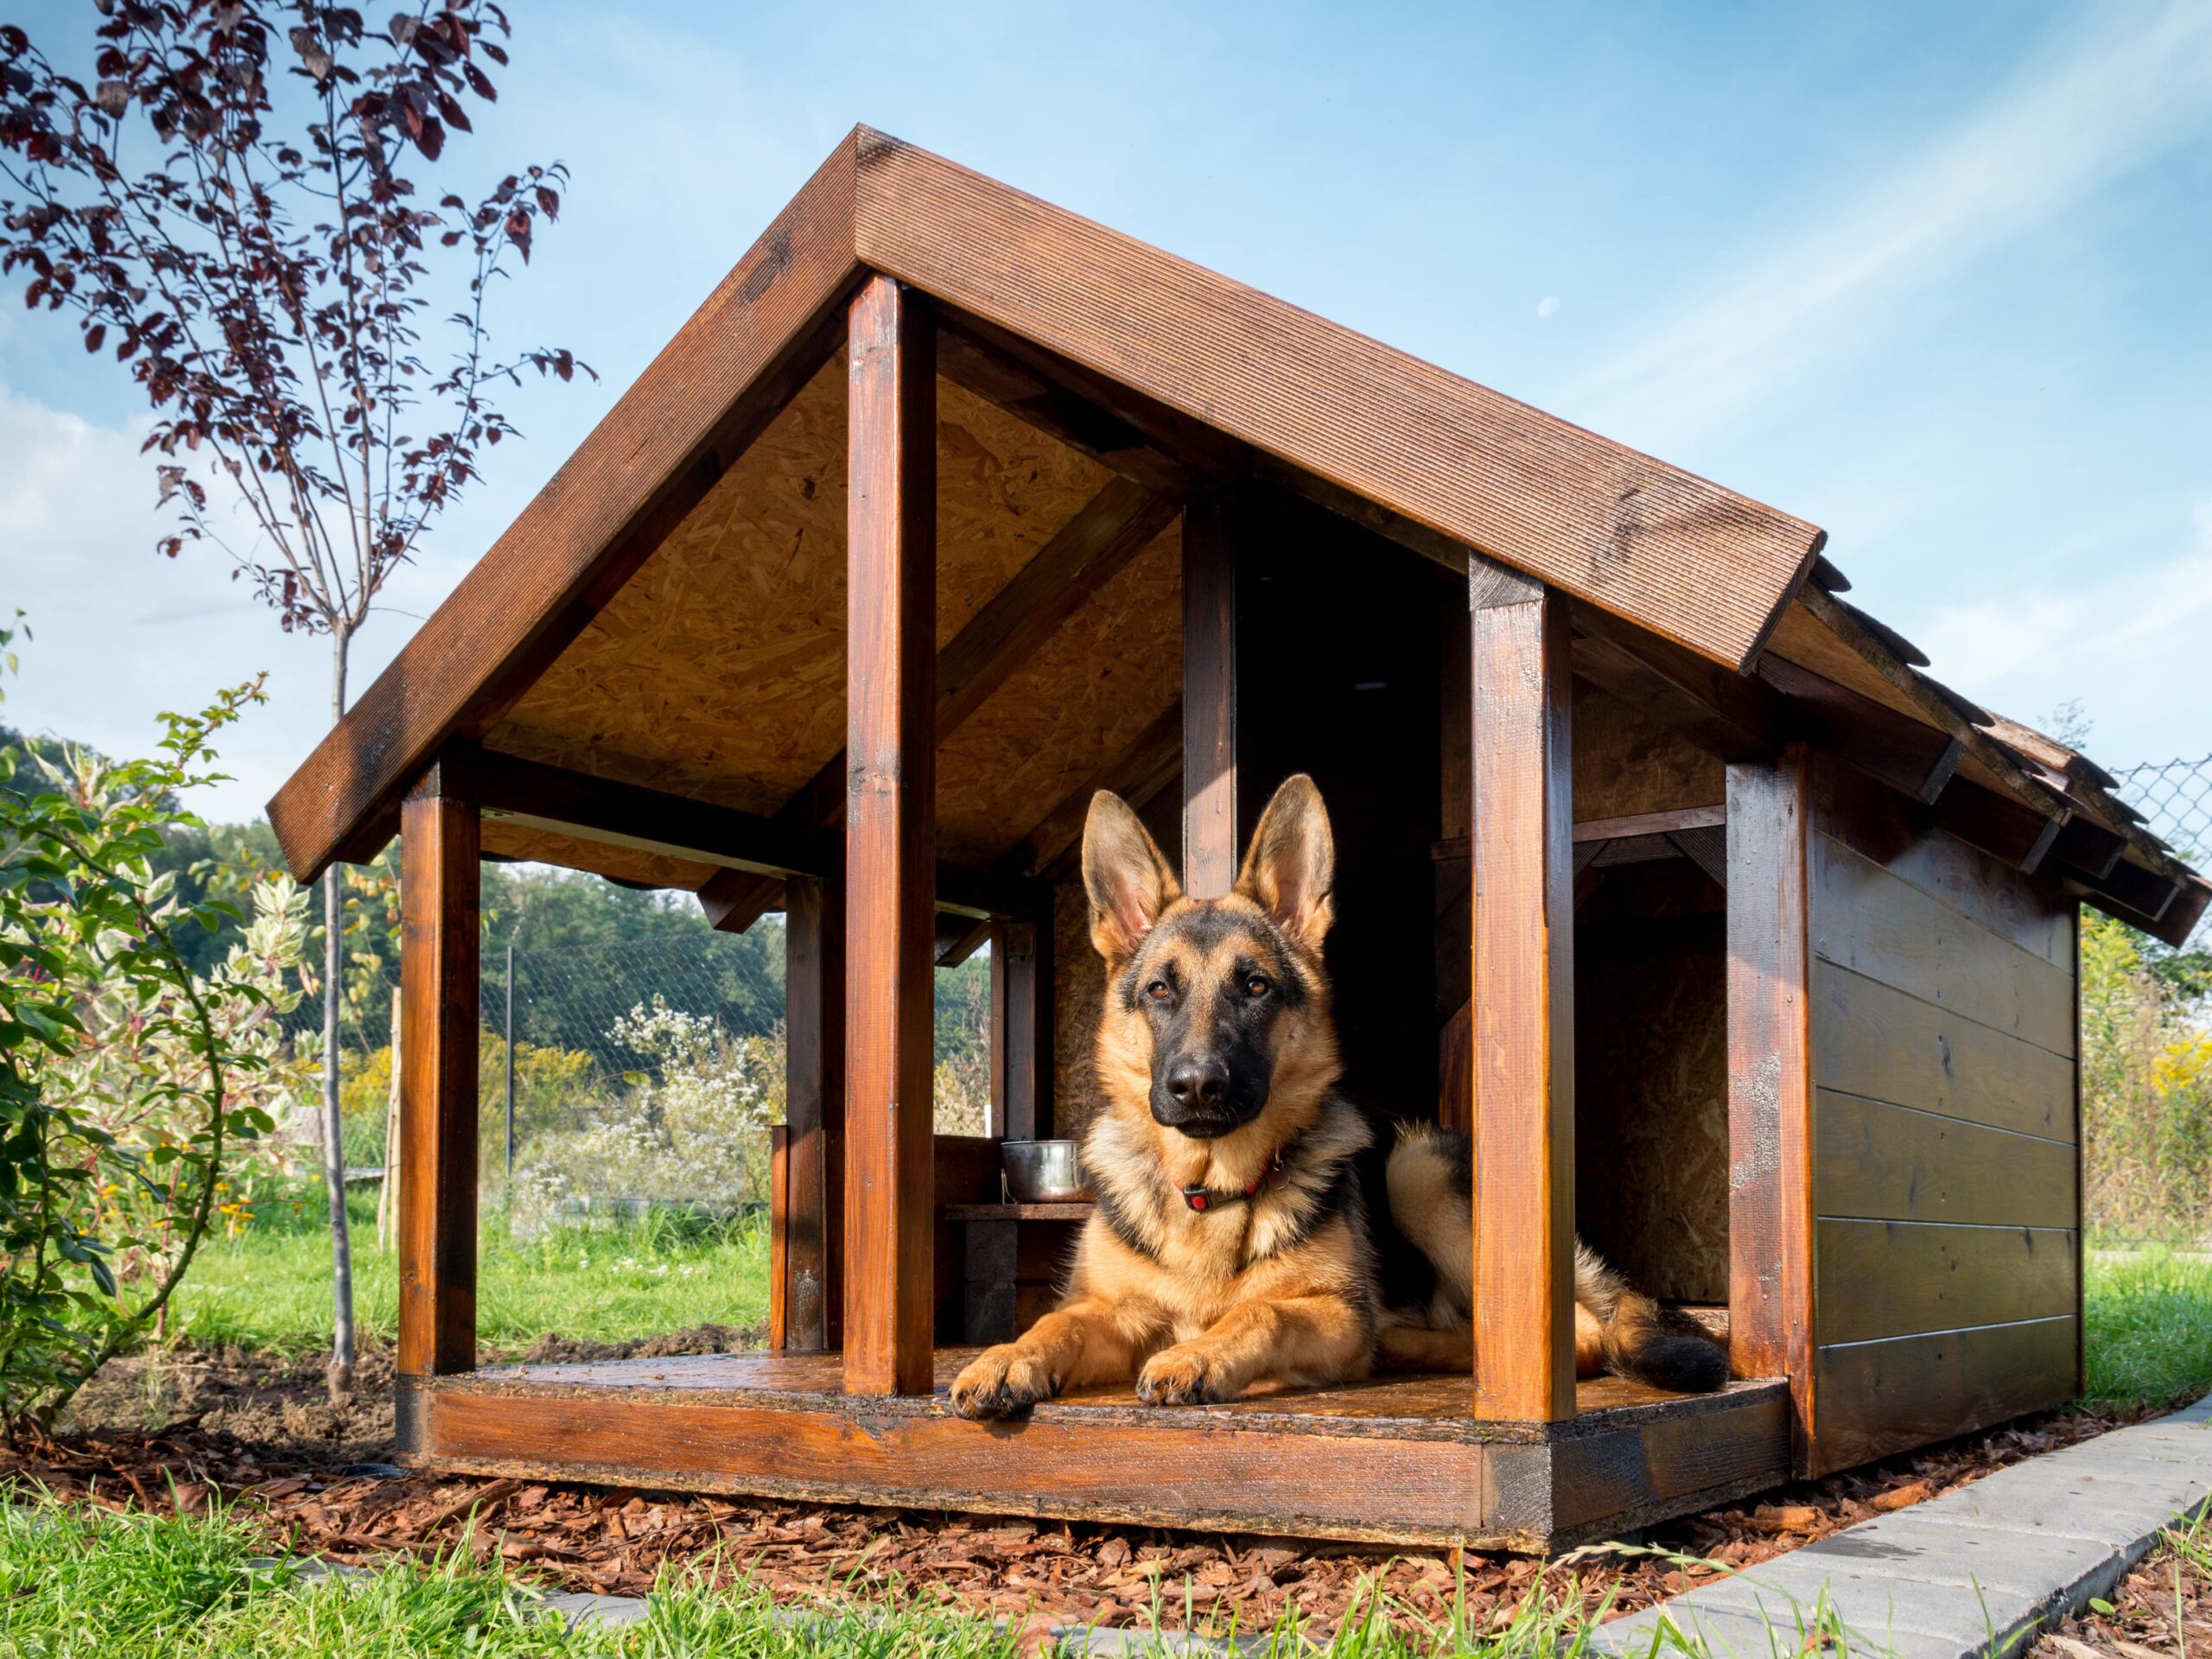 Best Dog House For German Shepherd